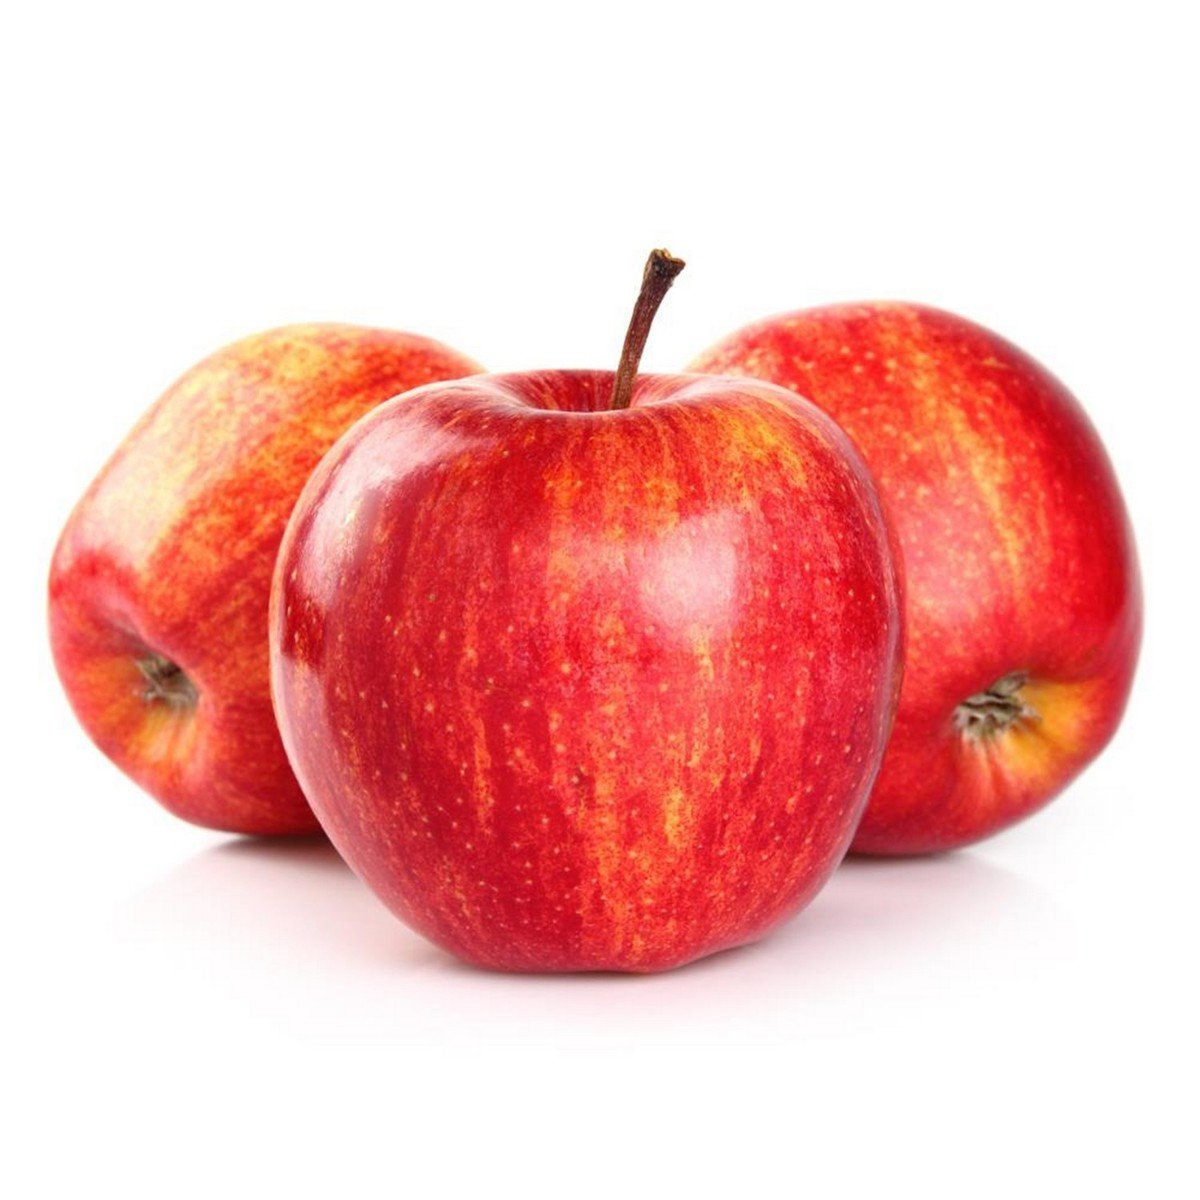 تفاح رويال جالا برزيلي ١.٢٥٠ جم تقريبا